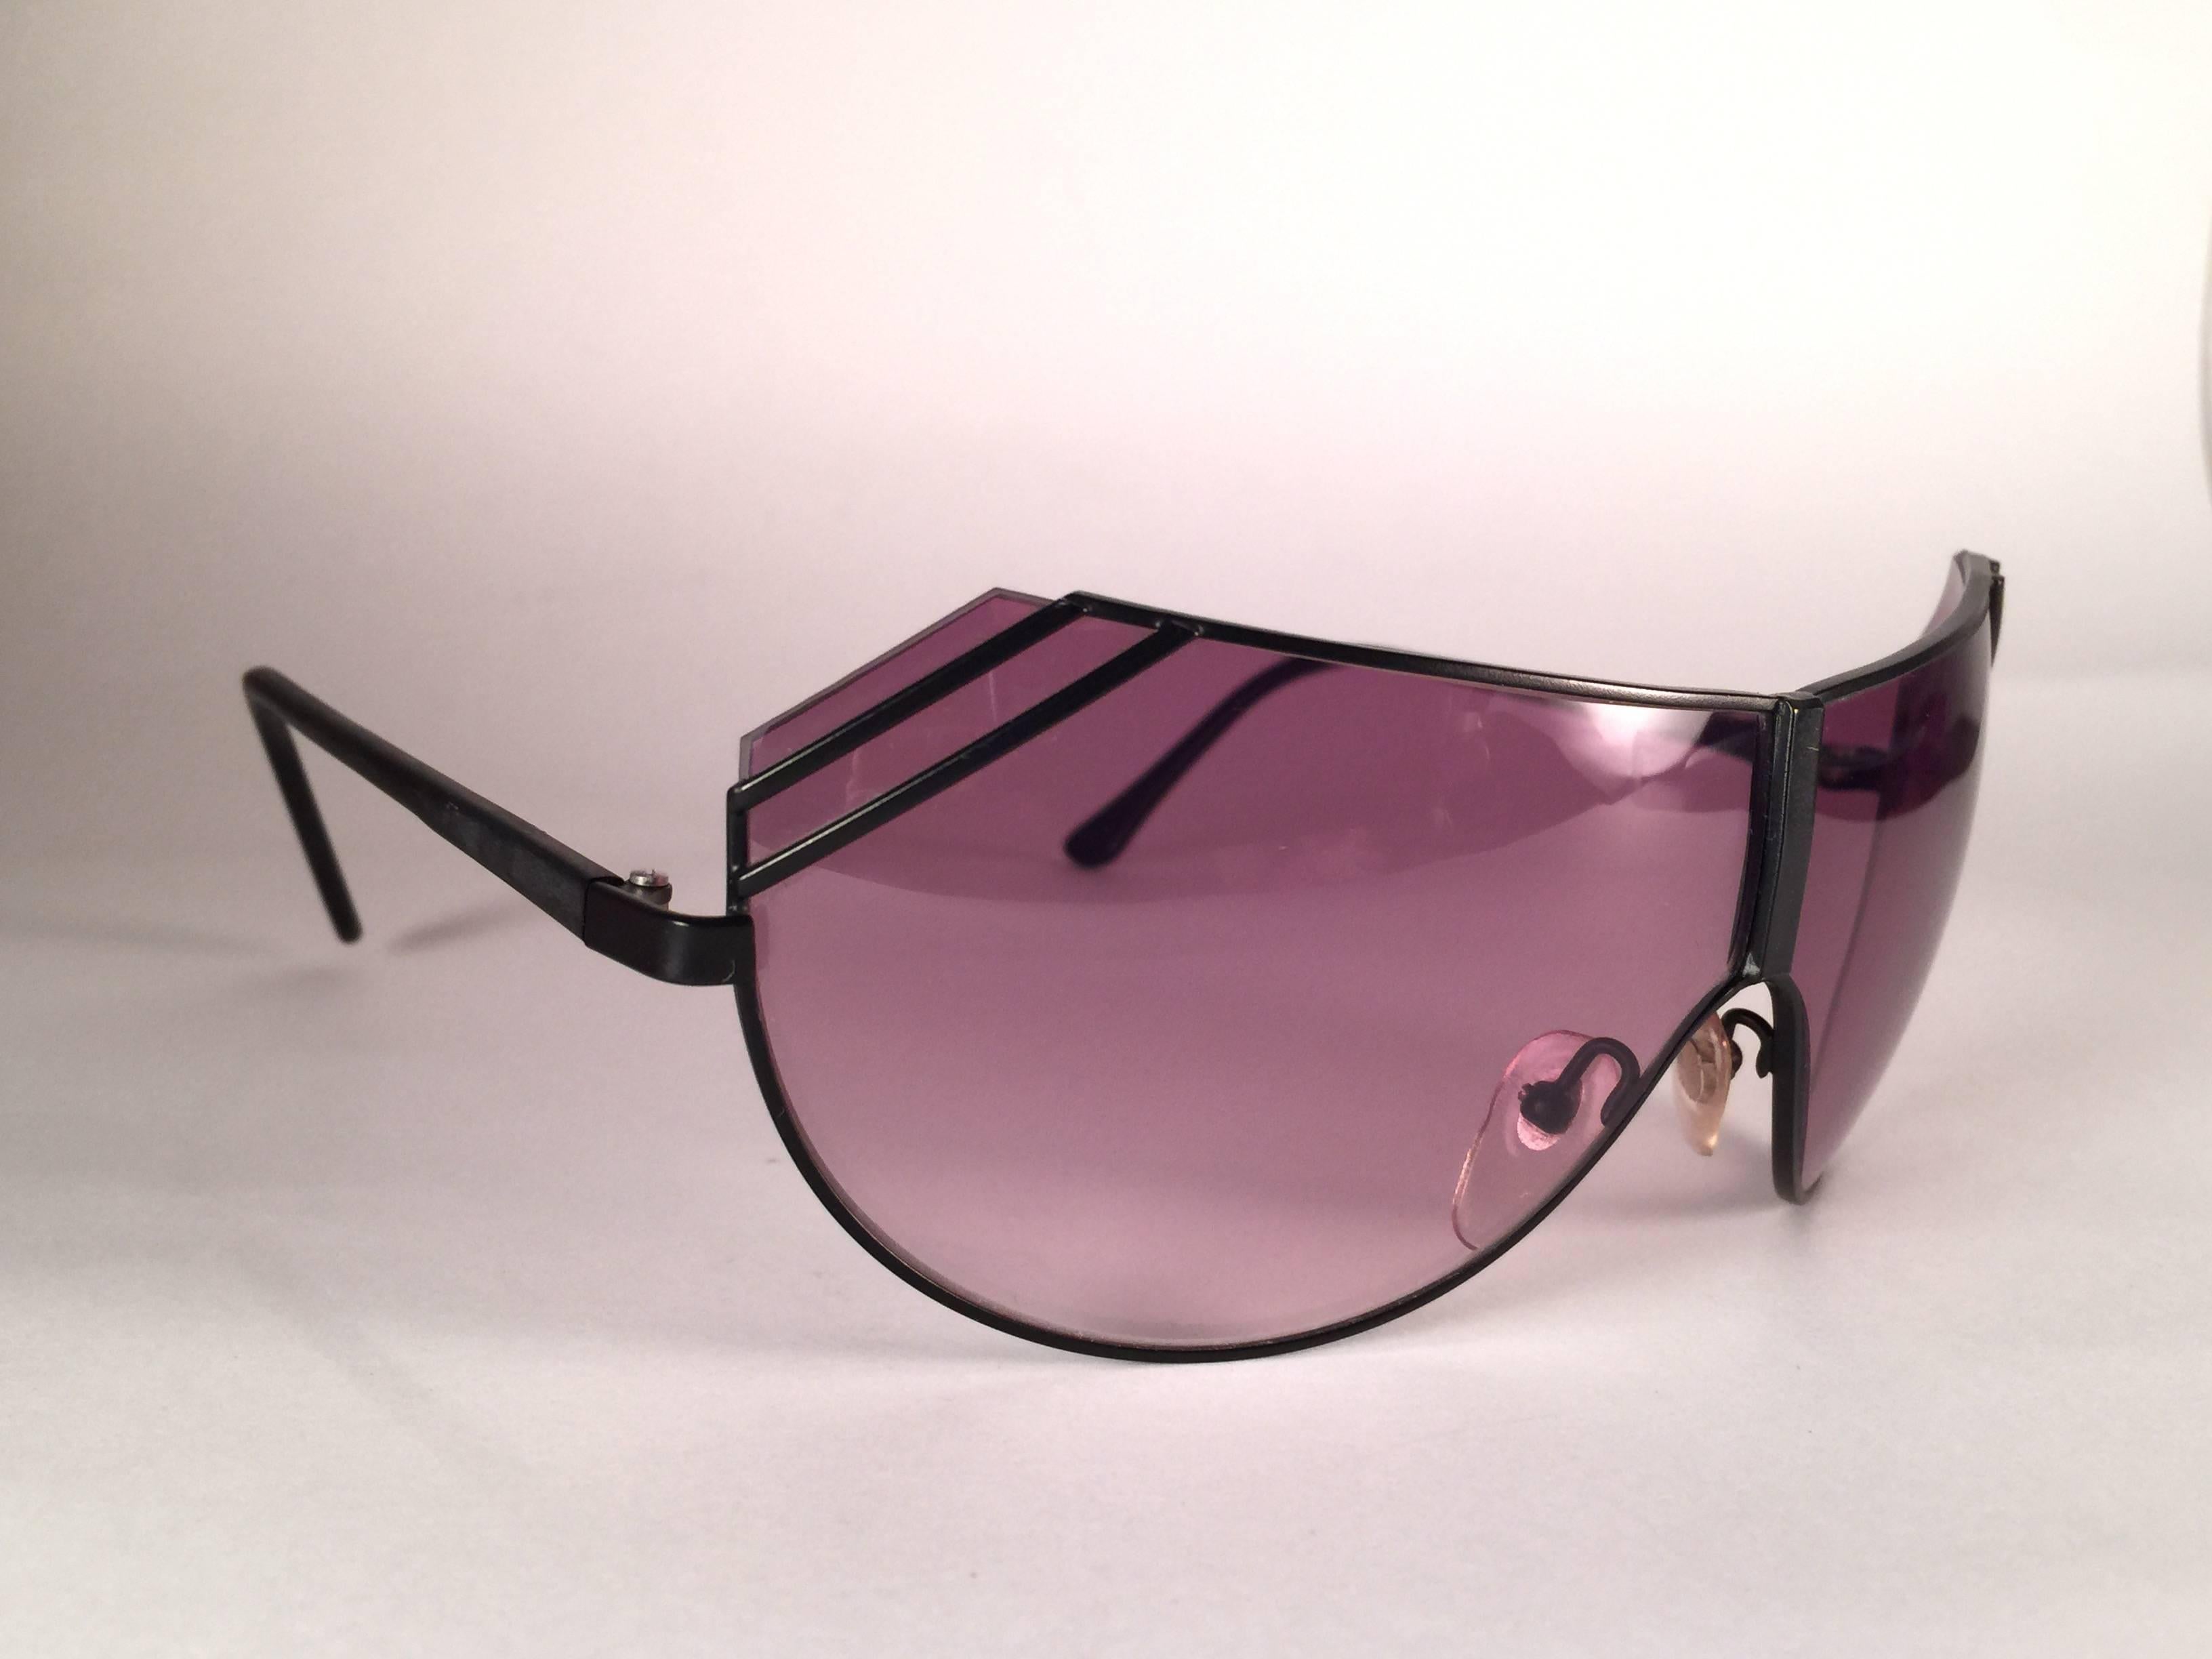 Nouveau masque vintage Gianni Versace, noir mat et élégant, avec une paire de lentilles dégradées violettes.

Neuf, jamais porté ou exposé. Cette paire peut présenter des signes mineurs d'usure dus au stockage.

Fabriqué en Italie.
